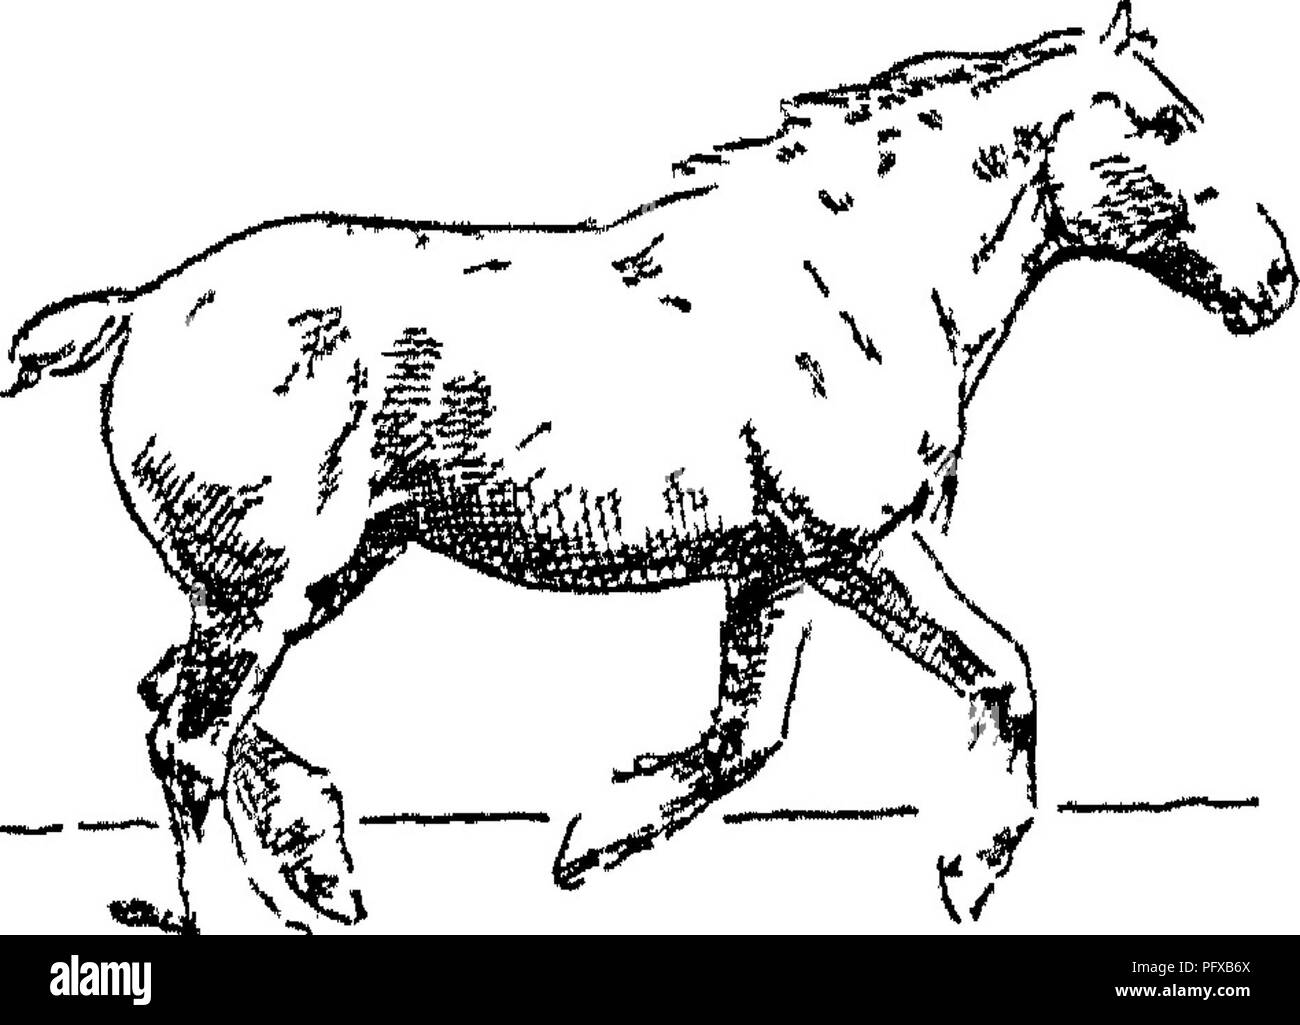 . Punkte des Pferdes; eine Abhandlung über den Körperbau, Bewegungen, Rassen und Evolution des Pferdes. Pferde. Abb. III Unterstützung auf Ne^r vorn (3. Mal) Jig. 112. - "* Ich 41 uCy Abb. 113-Unterstützung über die Hind (ist TimeV "Typische" Canter ohne Federung. Bitte beachten Sie, dass diese Bilder sind von der gescannten Seite Bilder, die digital für die Lesbarkeit verbessert haben mögen - Färbung und Aussehen dieser Abbildungen können nicht perfekt dem Original ähneln. extrahiert. Hayes, M. Horace (Matthäus Horace), 1842-1904. London, W. Thacker &Amp; Co Stockfoto